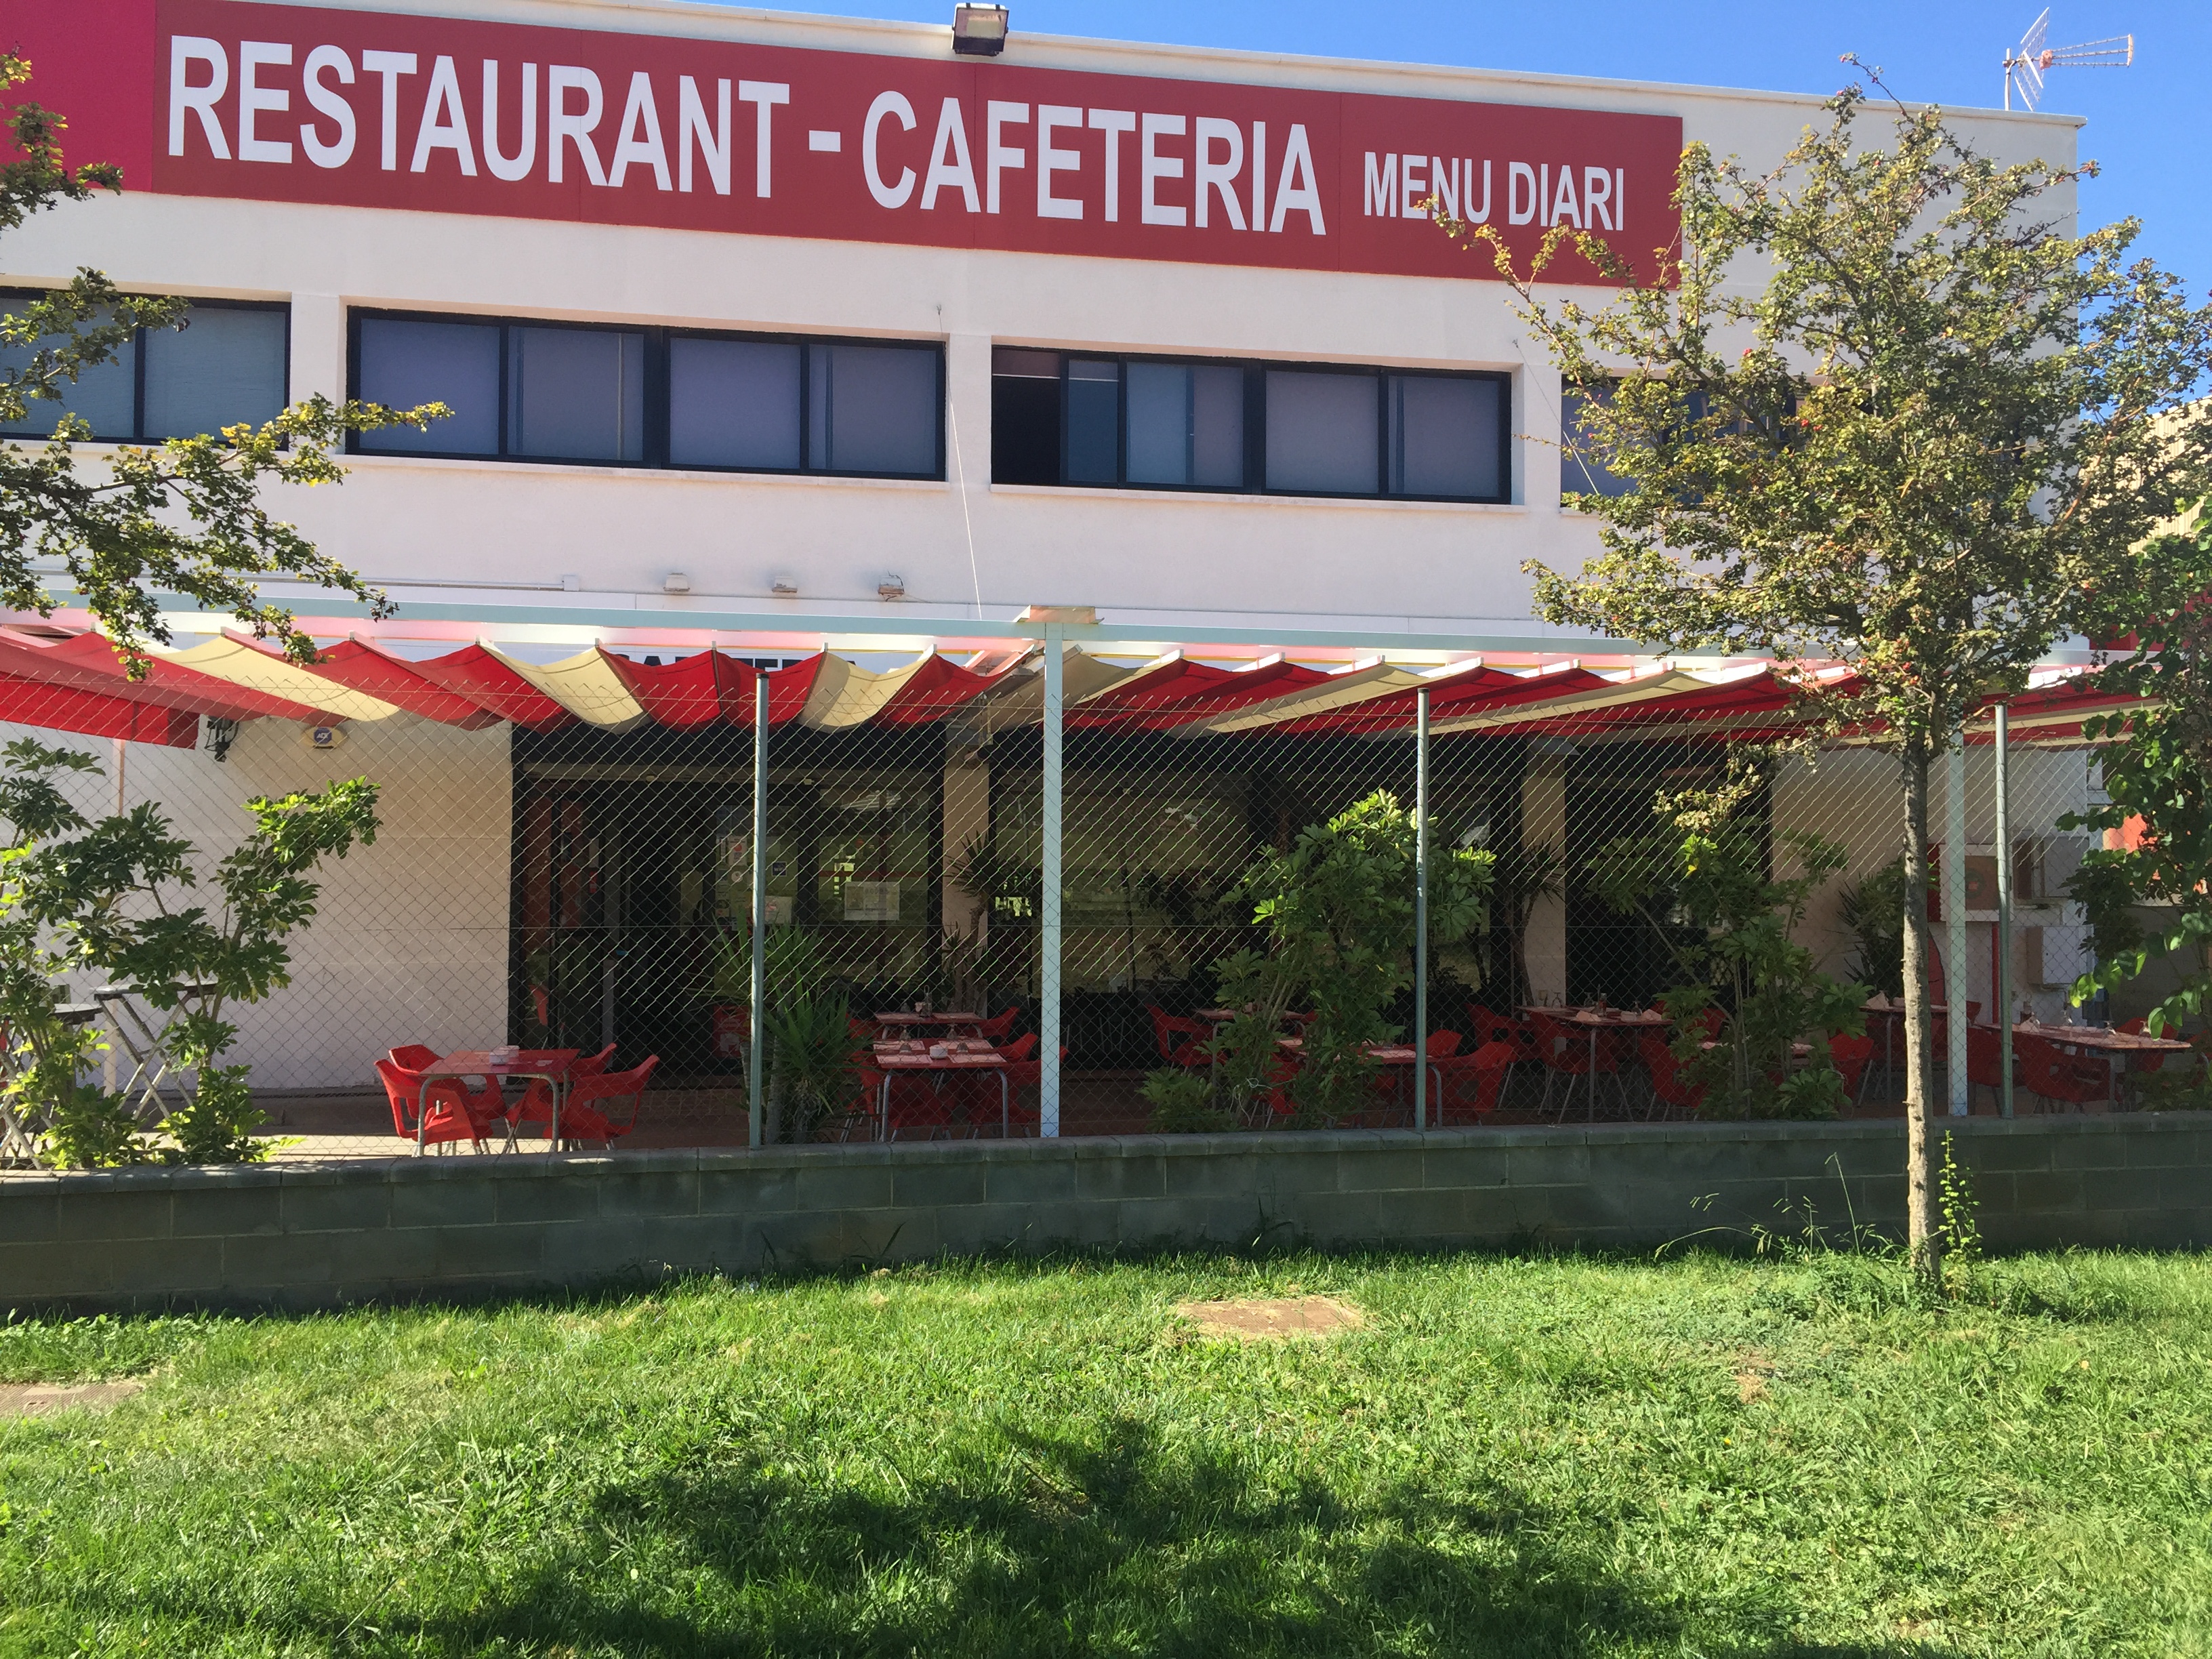 Restaurant La Fabi